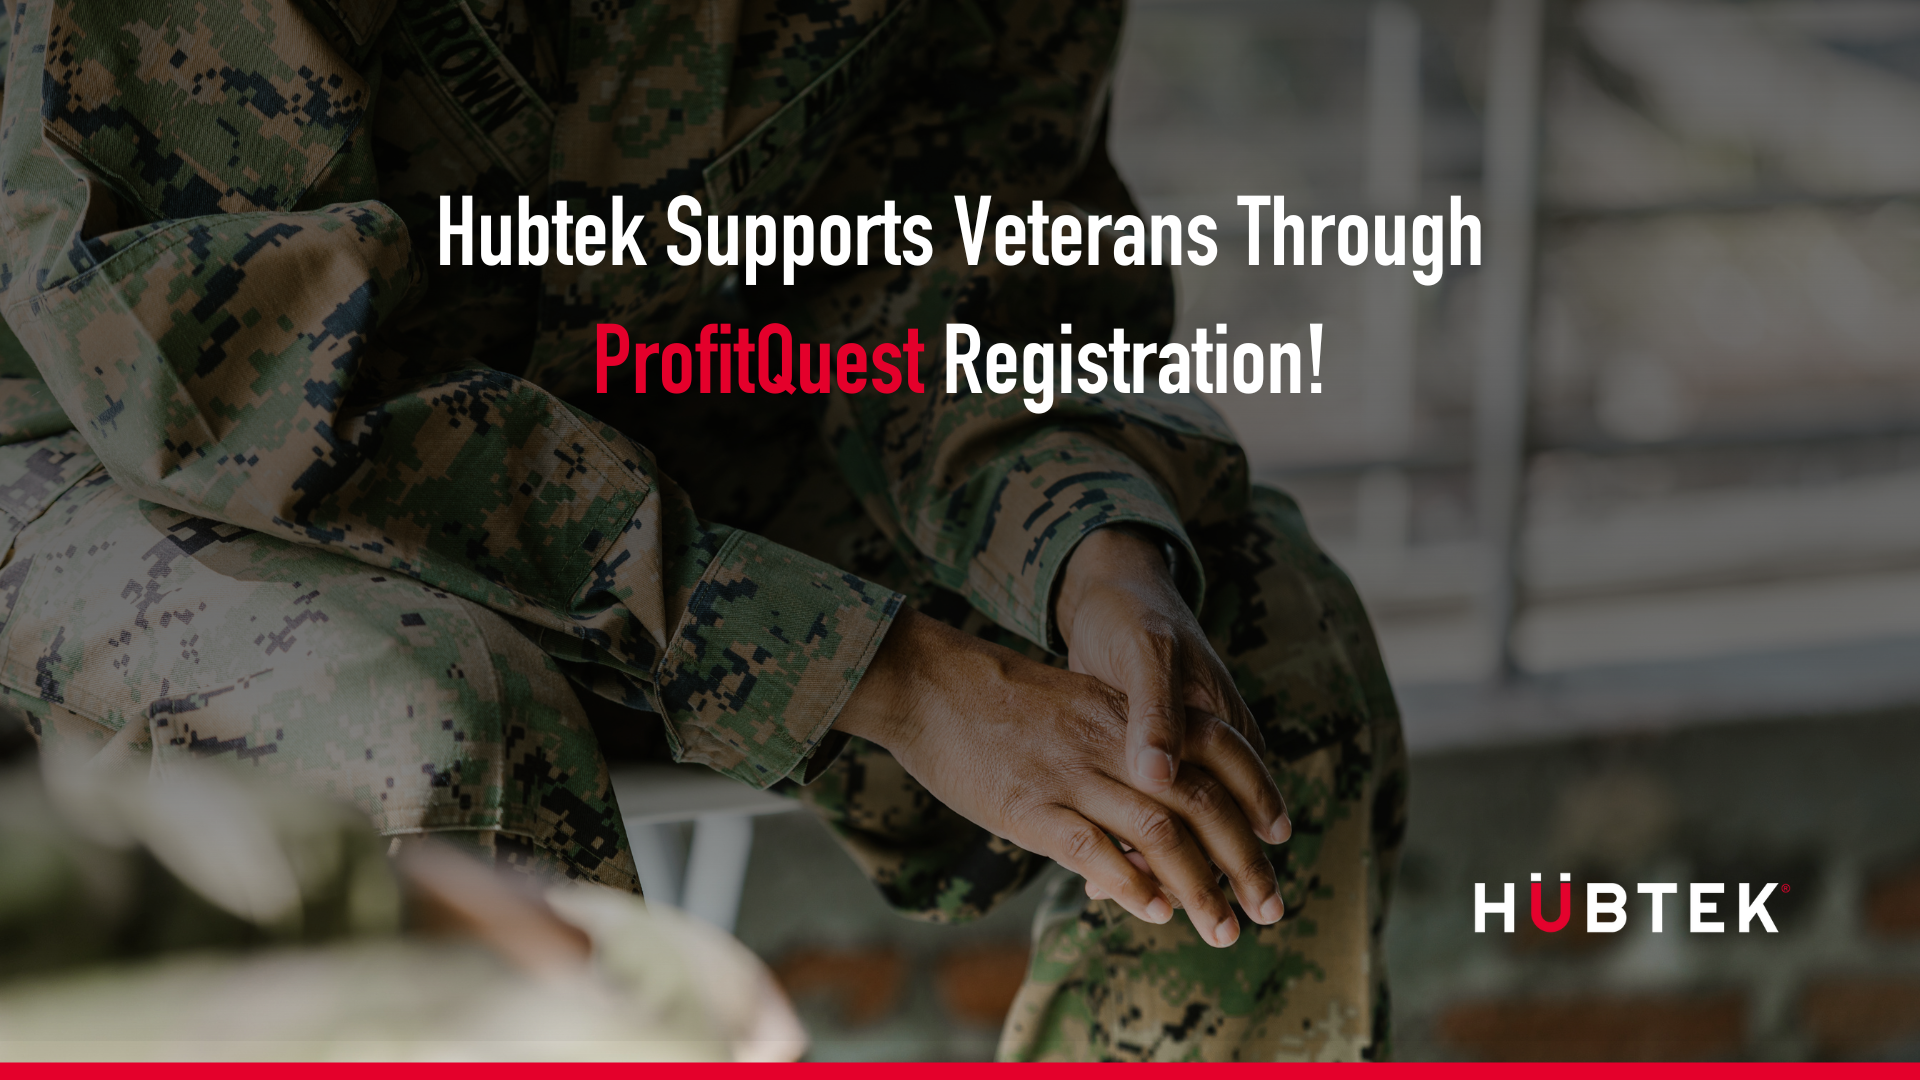 Hubtek supports veterans through ProfitQuest